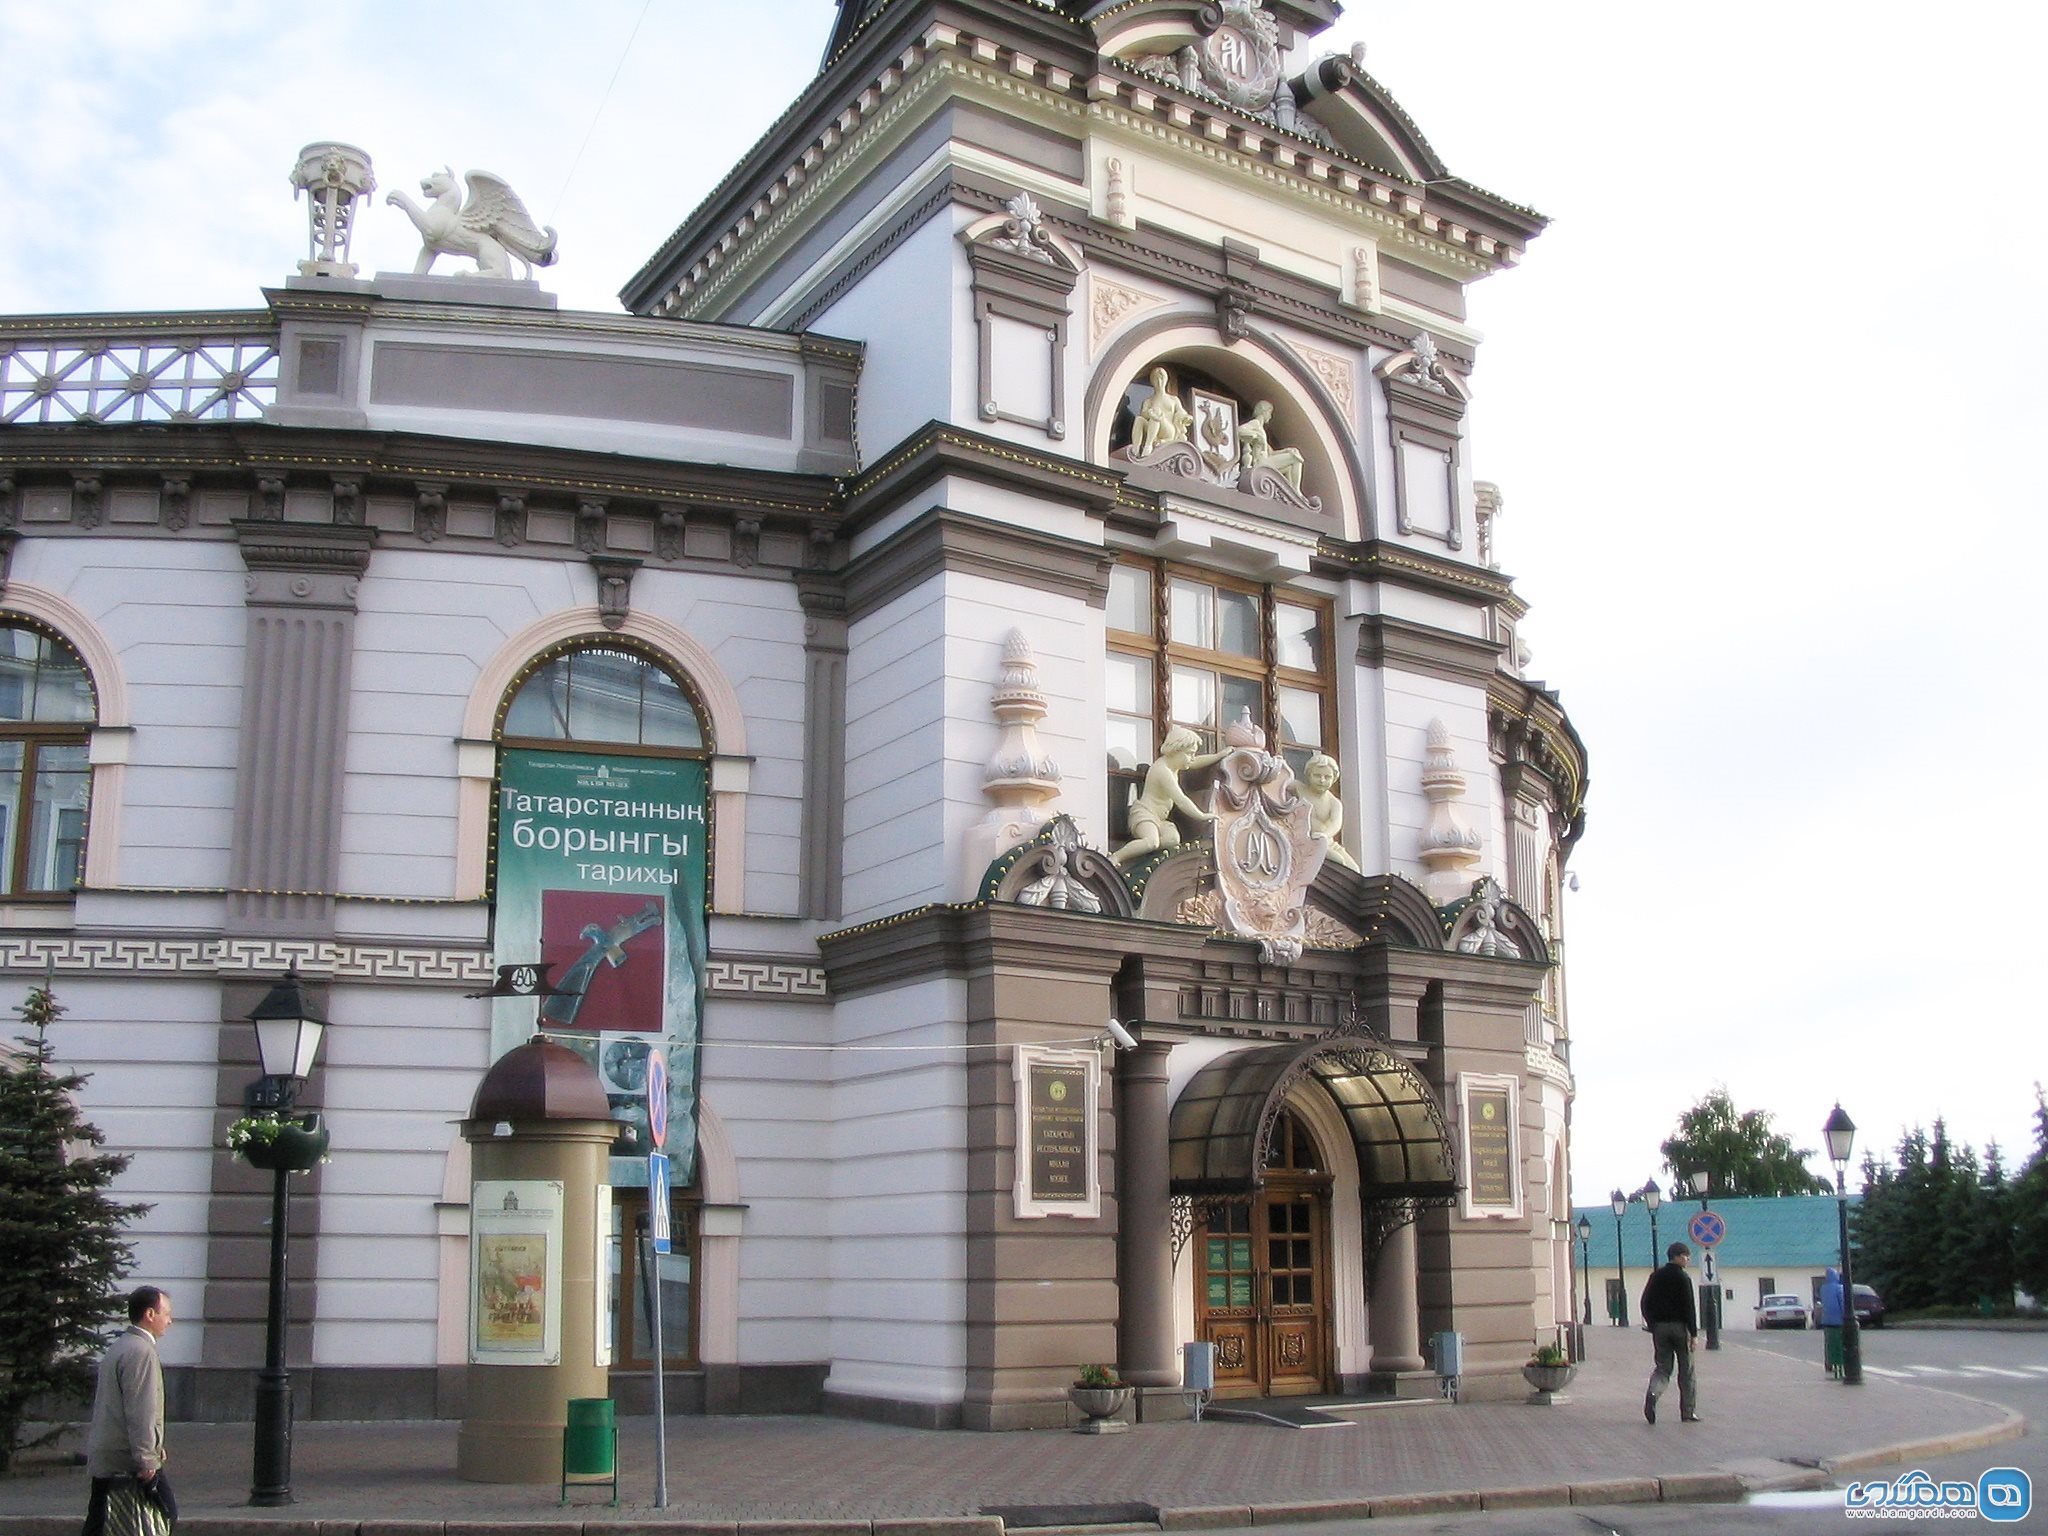 موزه ملی جمهوری تاتارستان National Museum of the Republic of Tatarstan